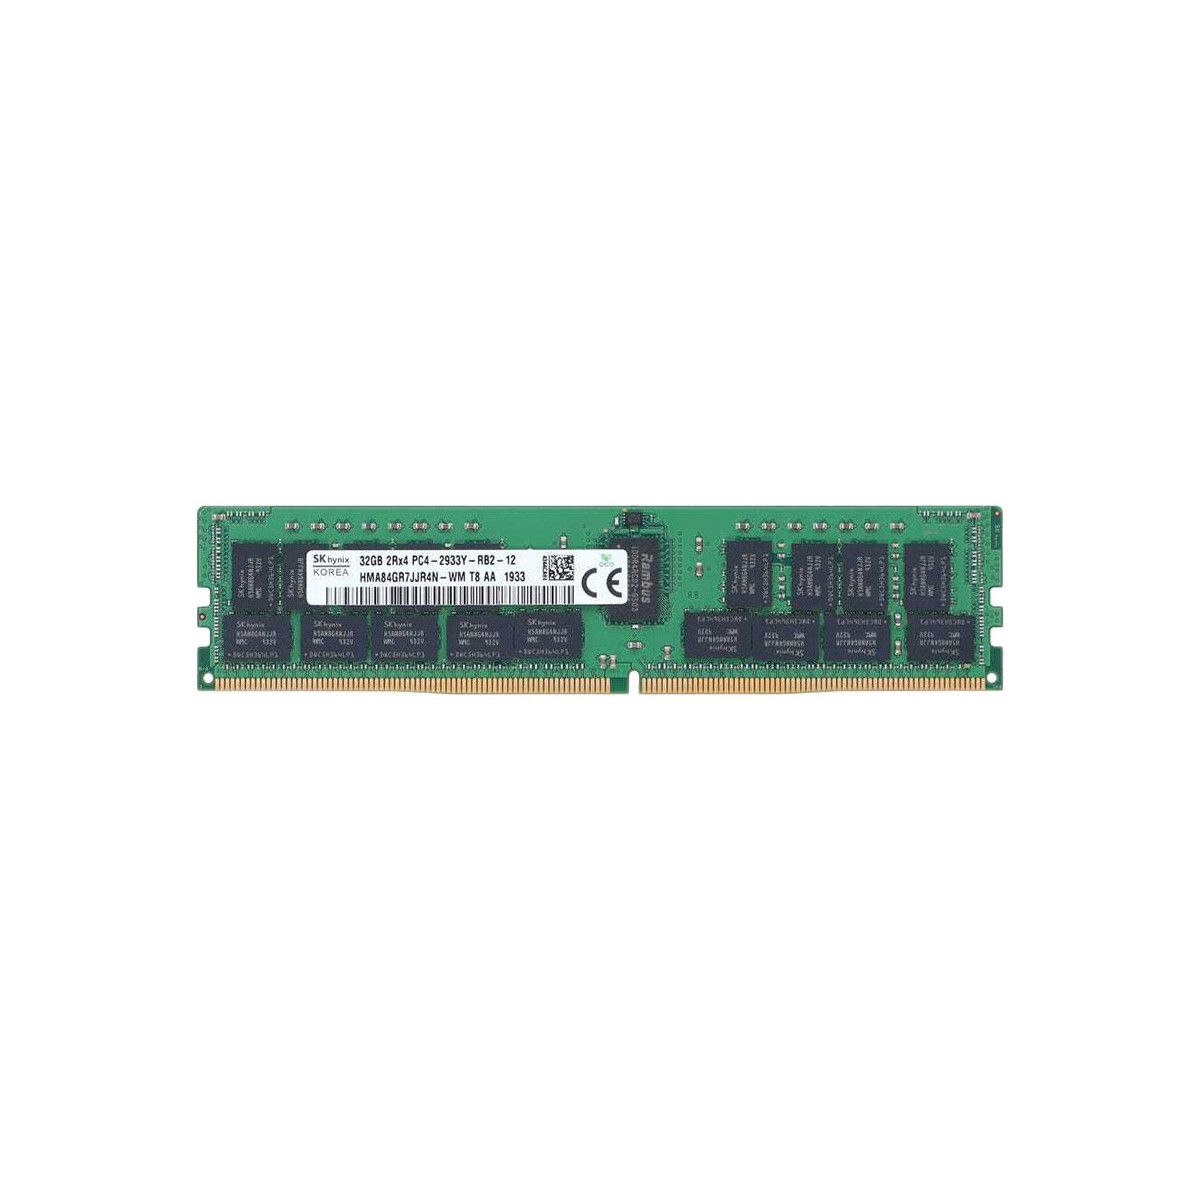 4ZC7A08742-MS -NO- Memstar 1x 32GB DDR4-2933 RDIMM PC4-23466U-R